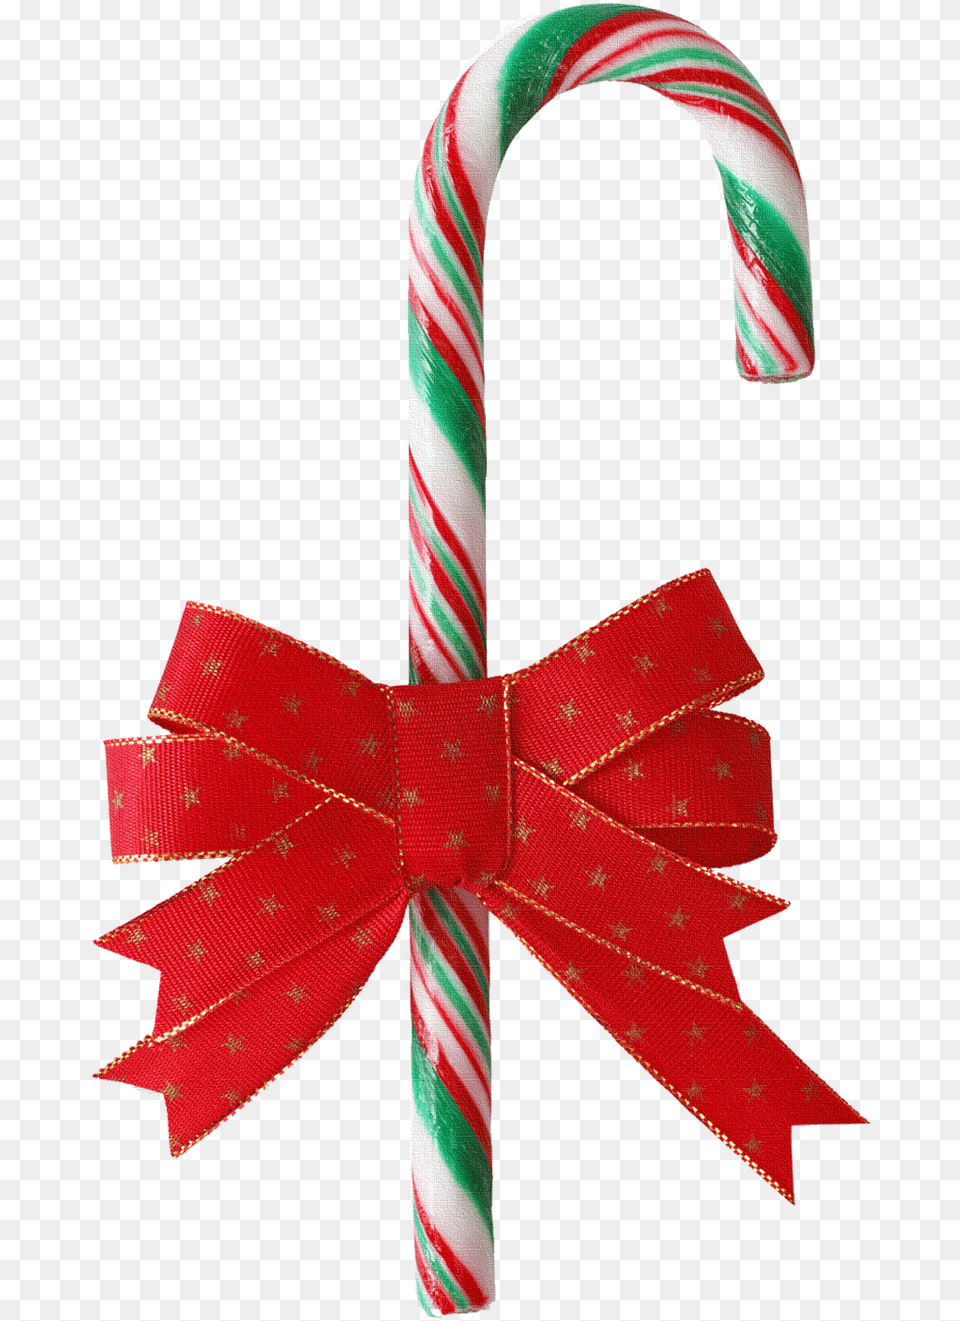 Adornos Luces Y Campanas De Navidad Baston De Caramelo Navidad, Food, Sweets, Stick, Candy Free Png Download